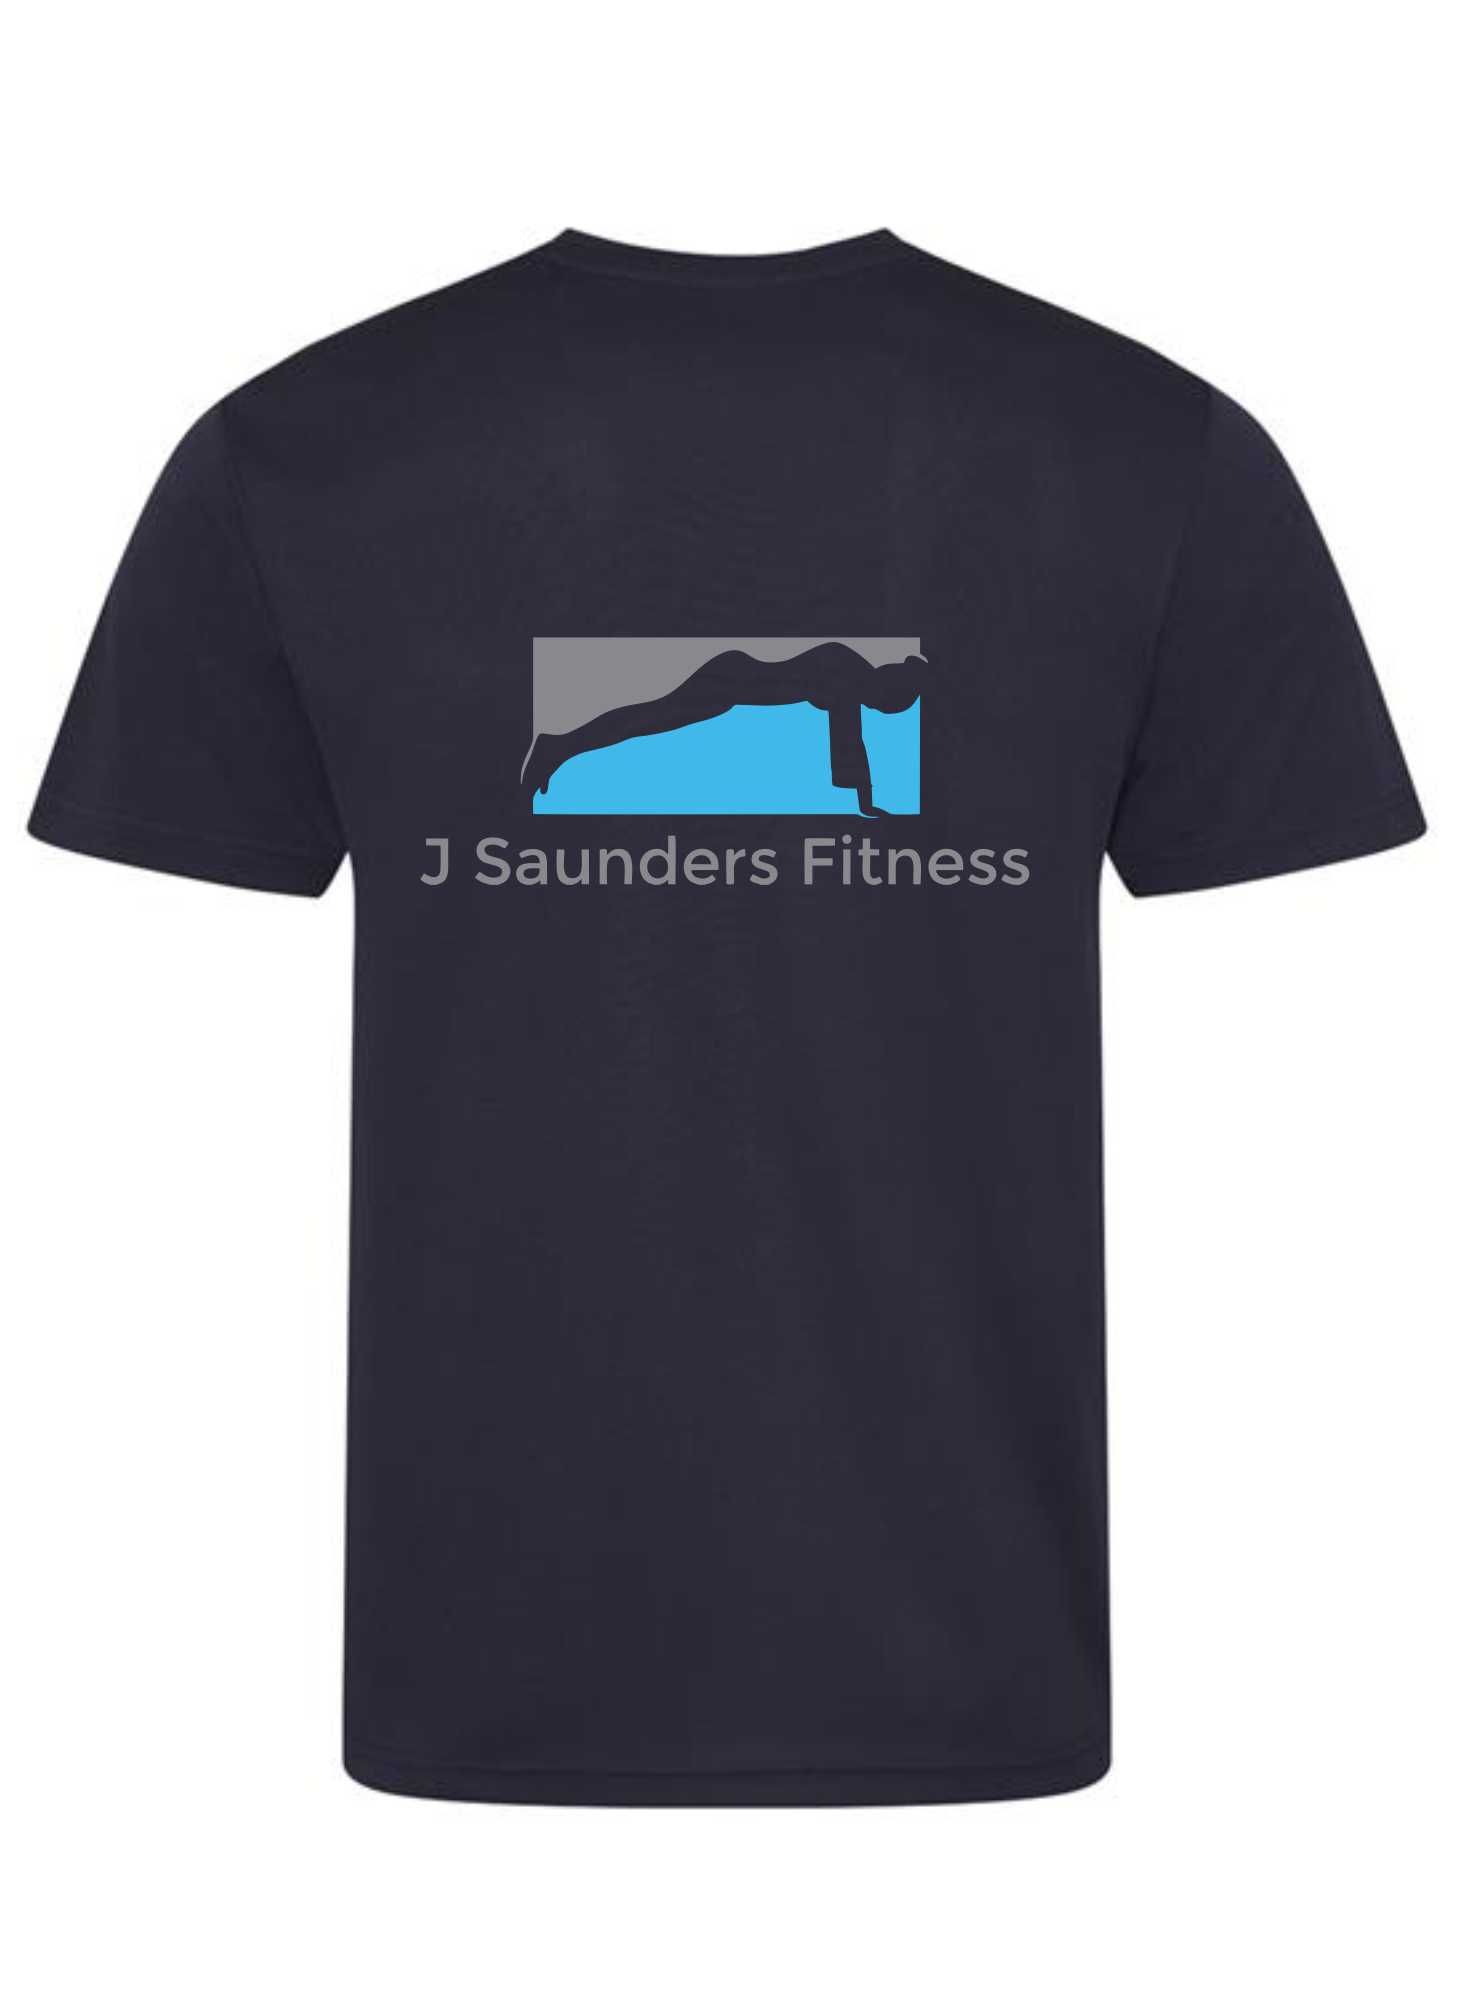 J Saunders Fitness- Men's/Unisex T-Shirt (Front & Back)